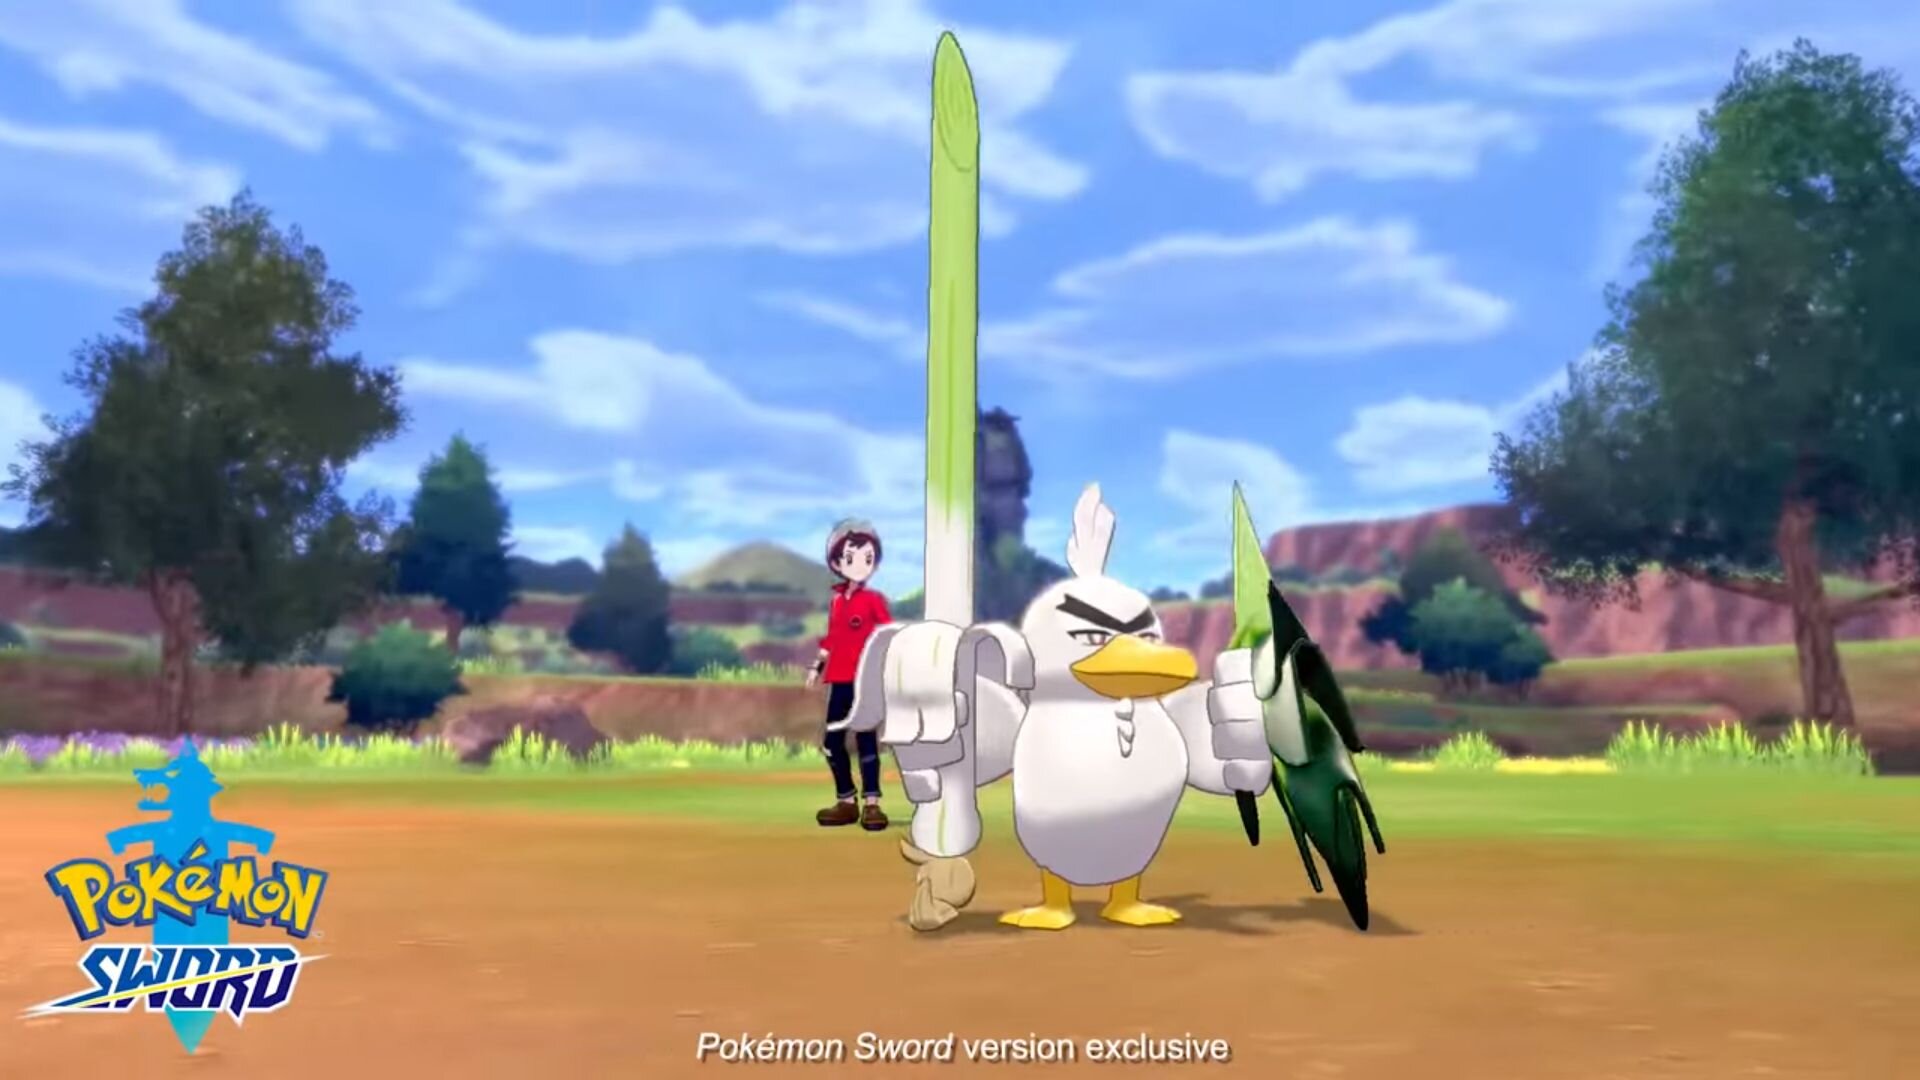 Pokémon Sword and Shield's newest Pokémon revealed: Sirfetch'd